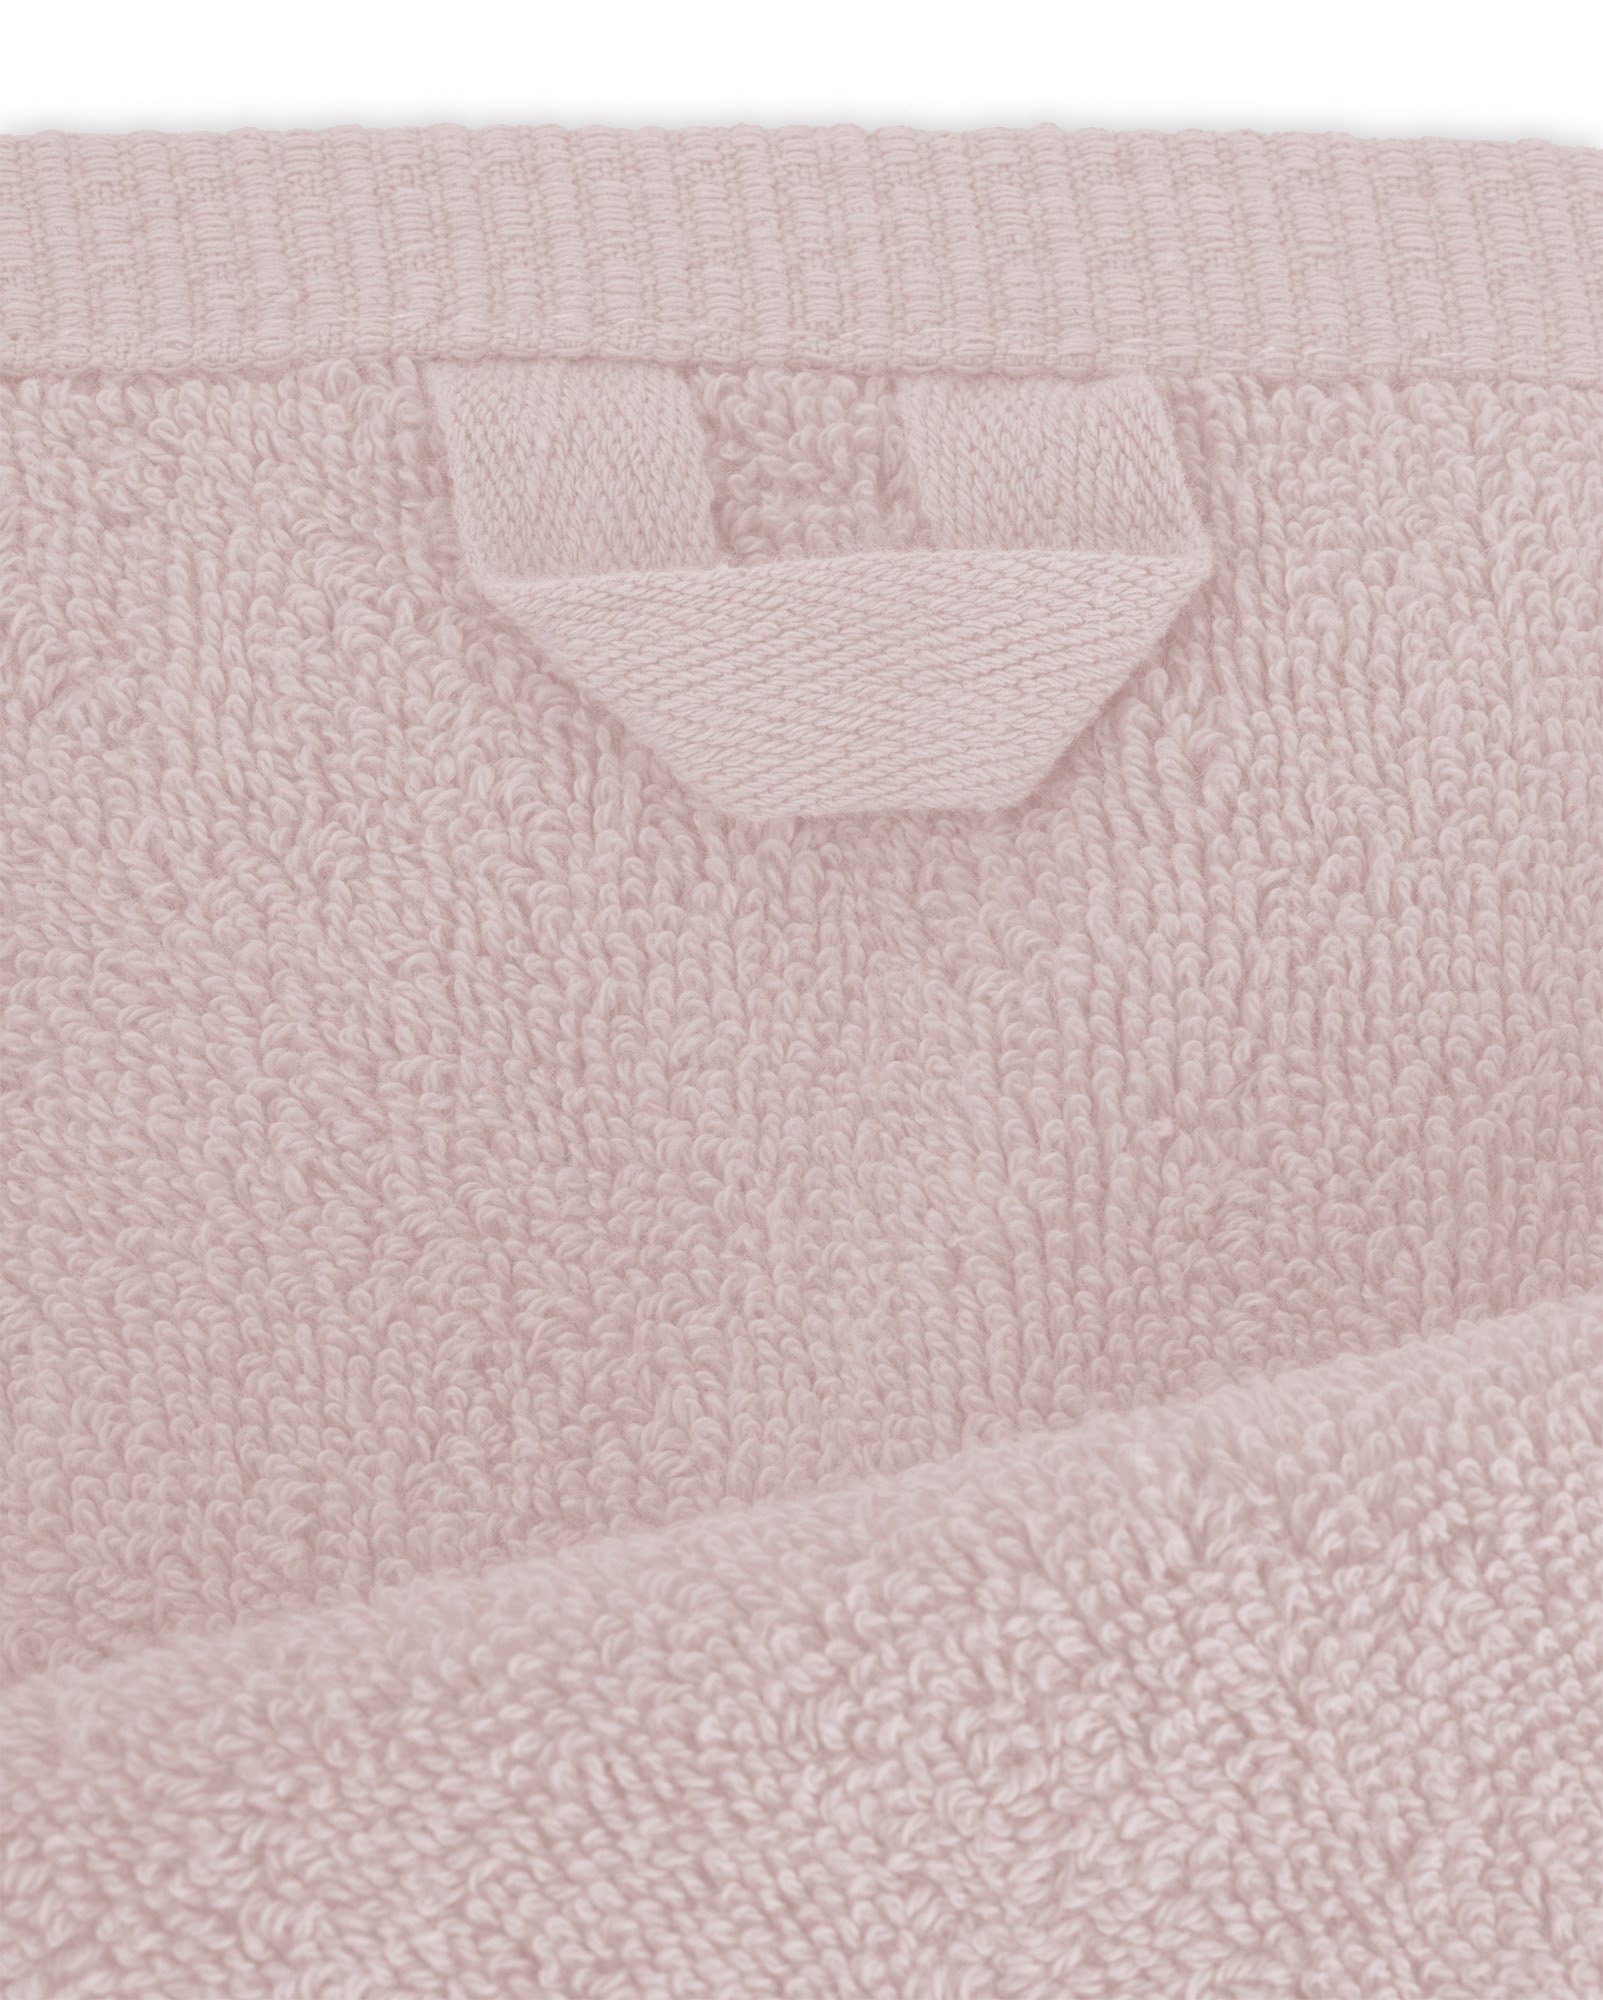 (1-St) BANANALU Set Baumwolle Pink 2 100% + Primrose Badetücher Handtücher Qualität 4 12-2904 Frottiertuch, Baumwolle Badetücher